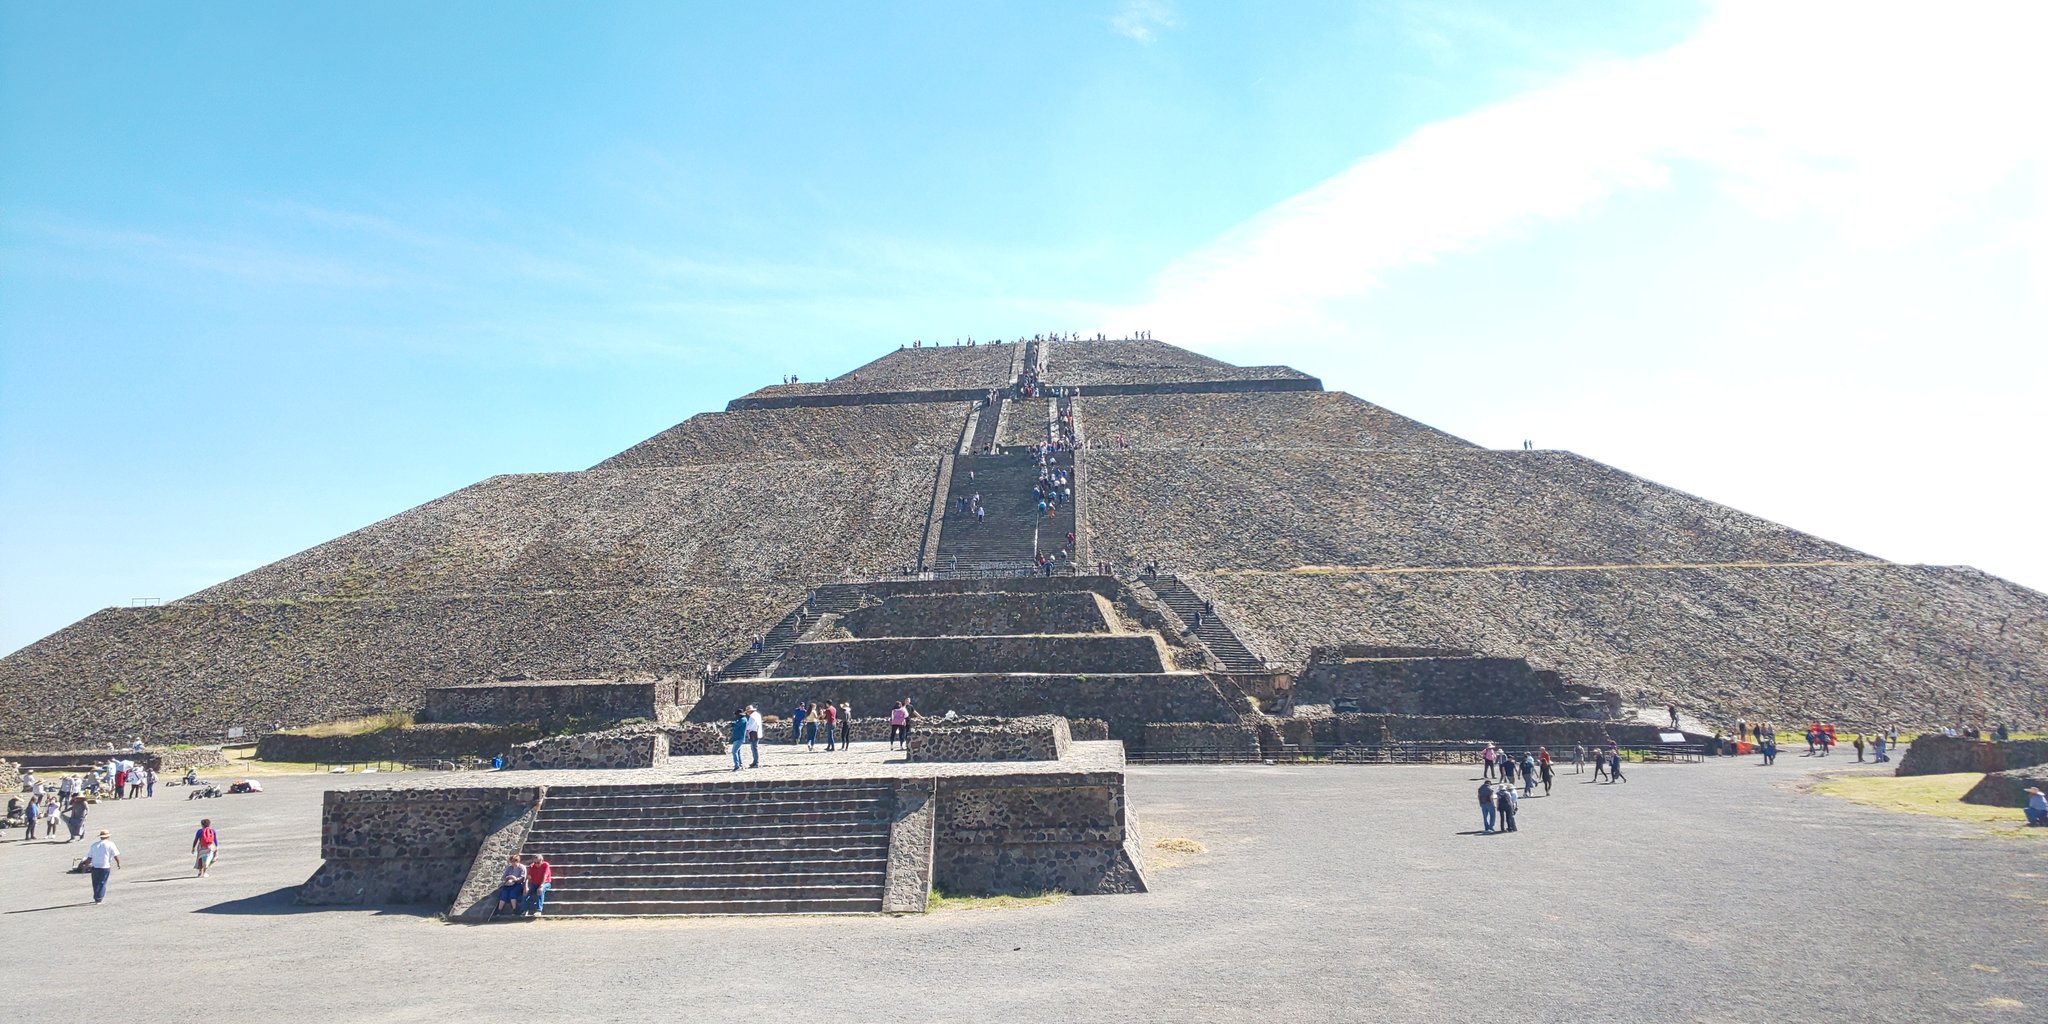 愛媛のみかん 四国産安藤菌100 そして 太陽のピラミッド ここを登るには 手前に急で細い下りの階段が待ち受けてました メキシコ テオティワカン 世界遺産 太陽のピラミッド